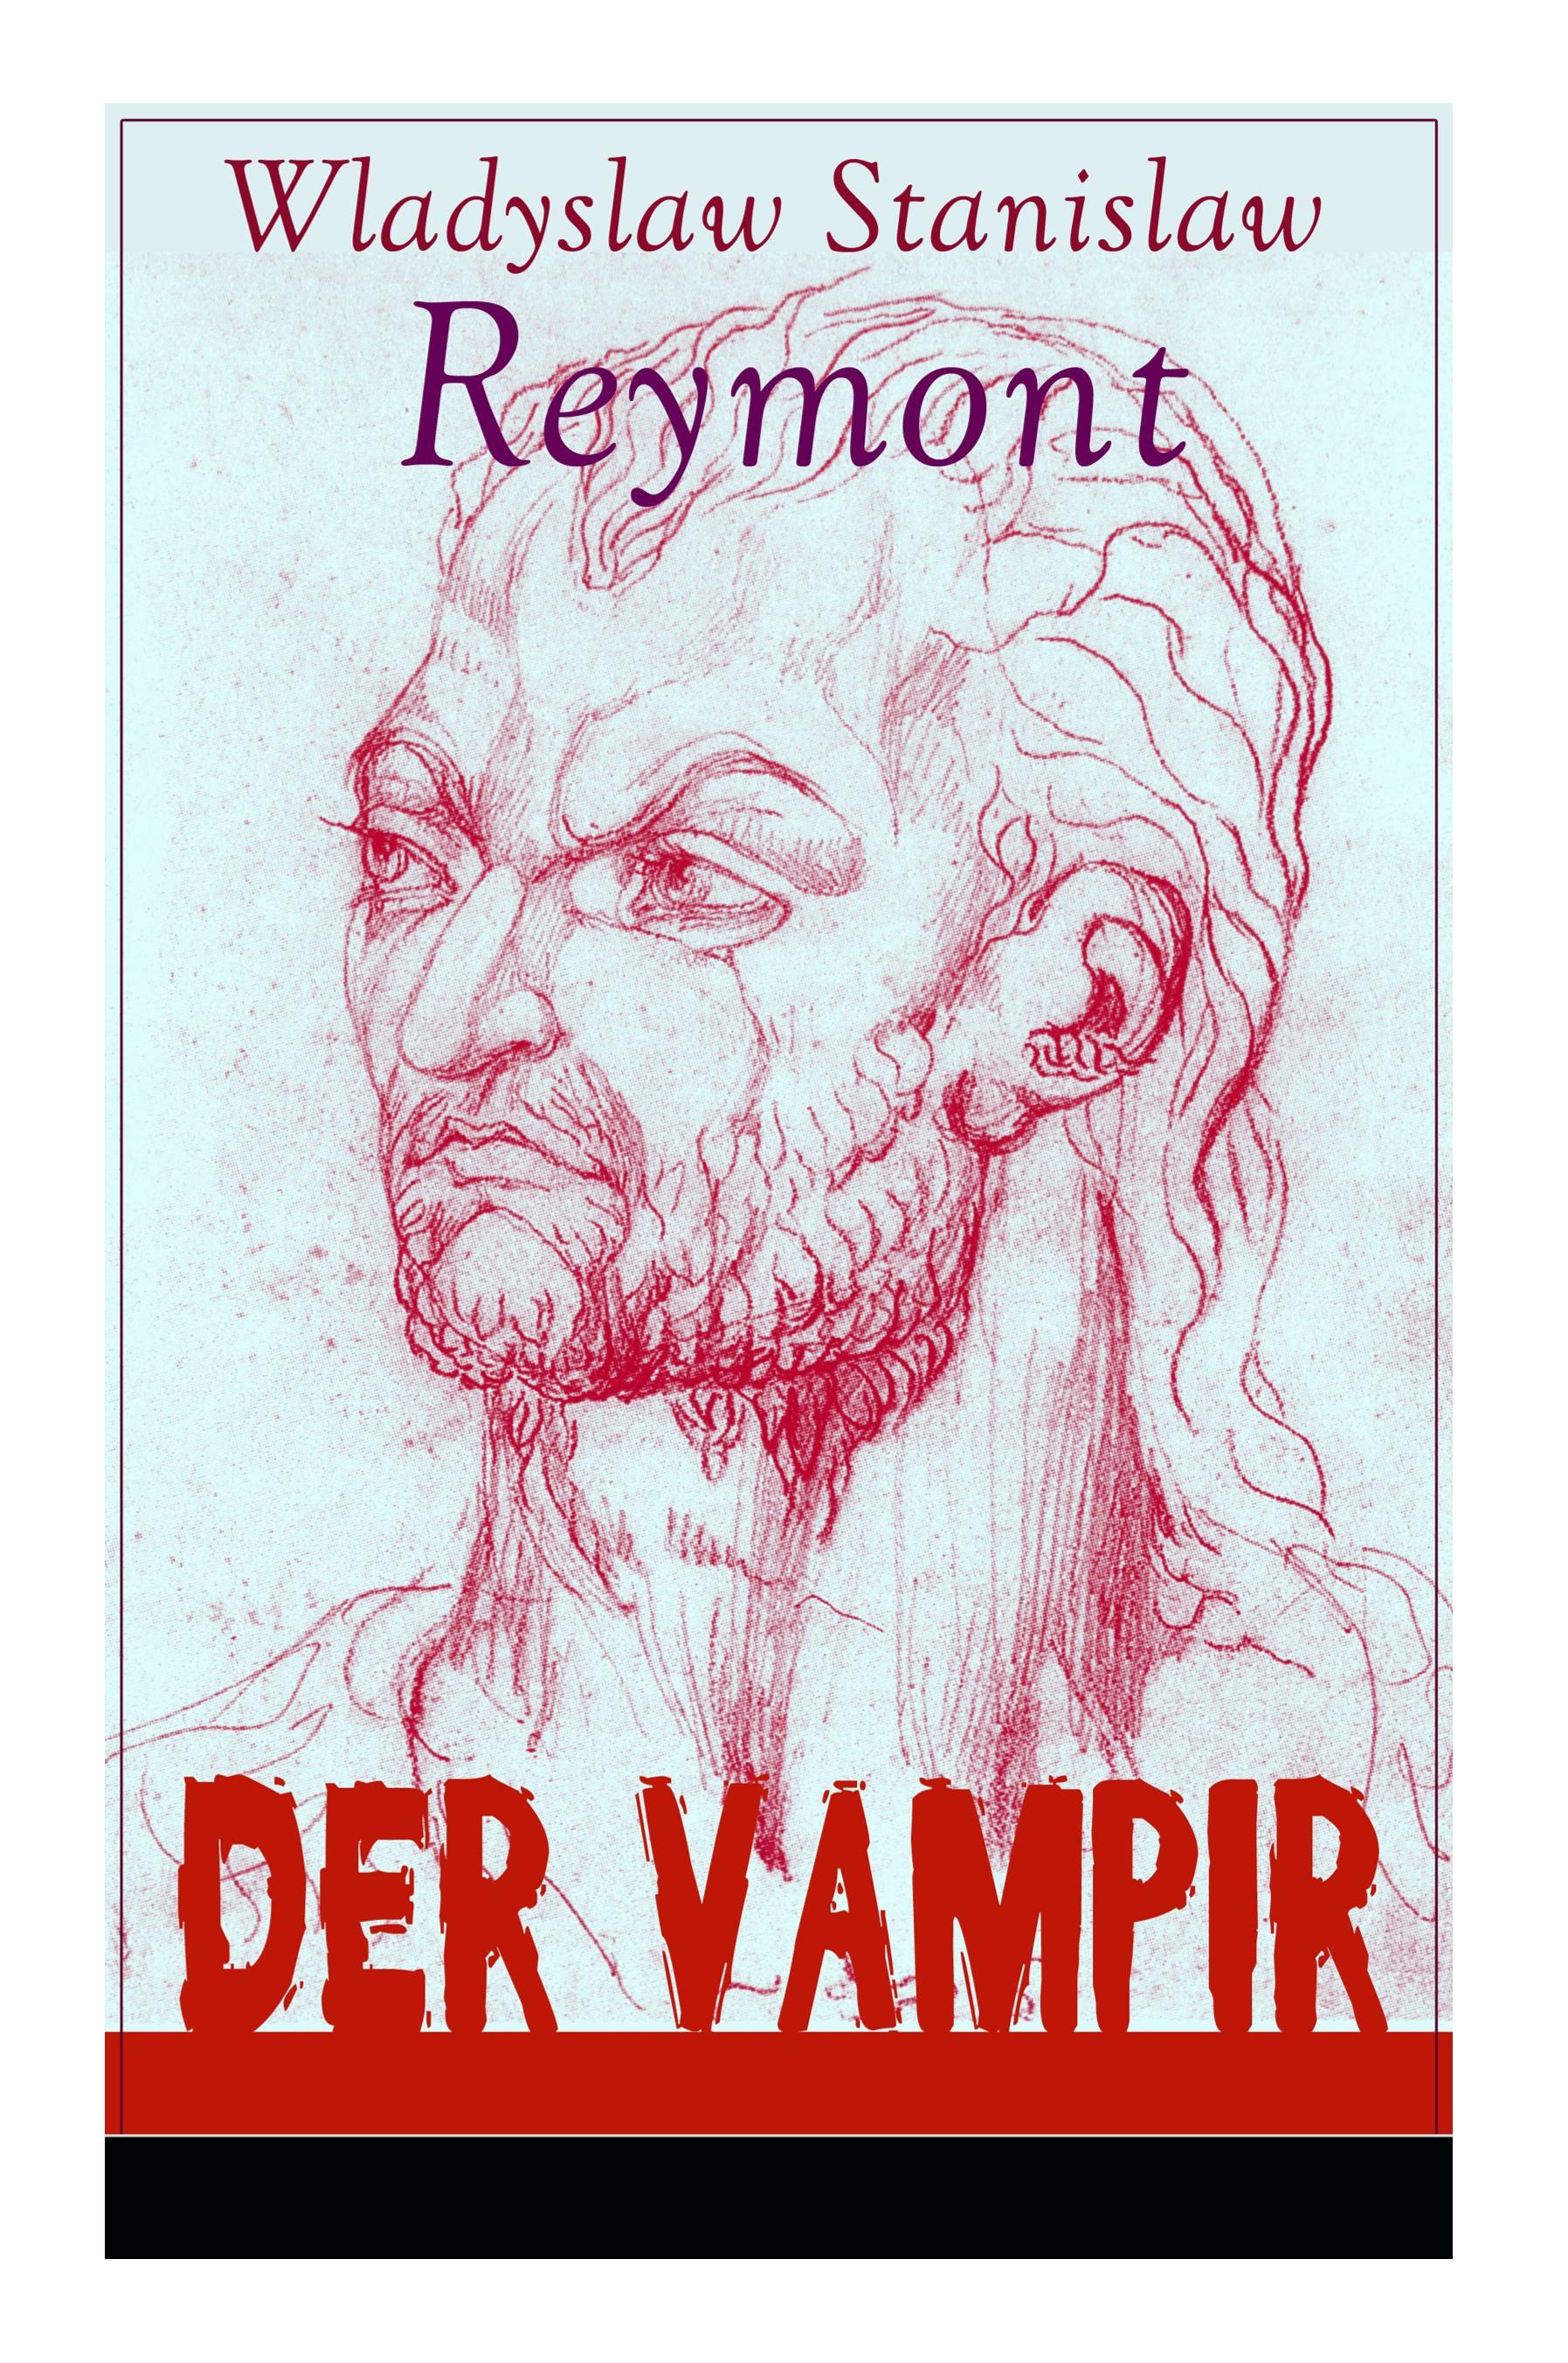 Der Vampir - Reymont, Wladyslaw Stanislaw|Richter, Leon